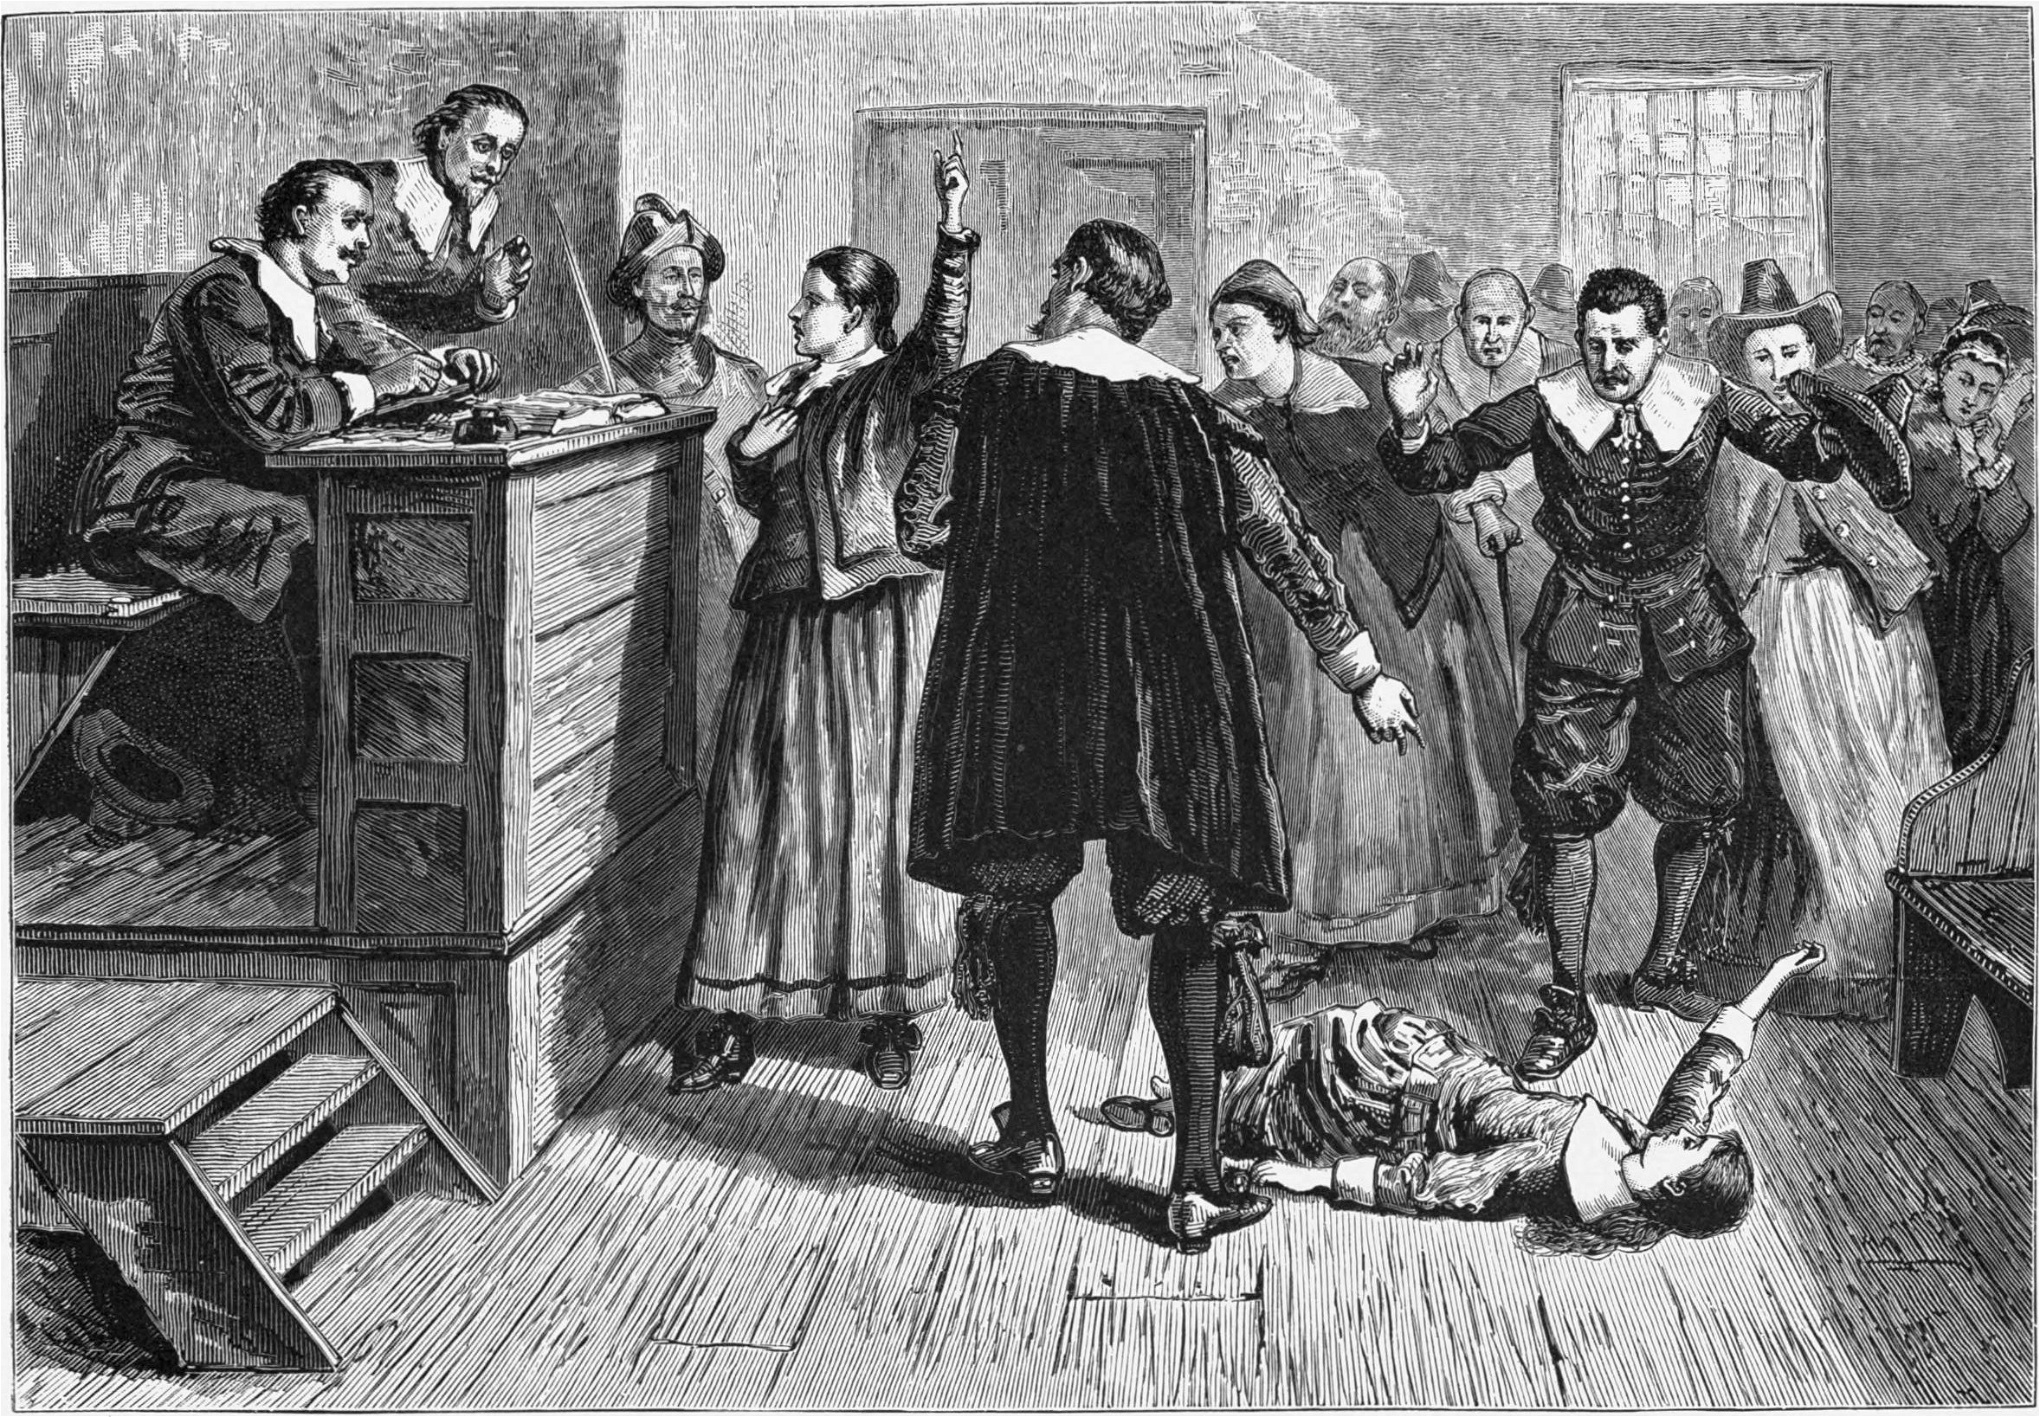 Silvia Federici beskriver 1600-talets häxjakter som ”klimax på statens ingripande mot den proletära kroppen i den moderna eran”. Illustration (1876) av förhörsdomstolen under häxprocesserna i Salem i USA, 1692–1693, där 20 människor avrättades. 14 av dem var kvinnor.